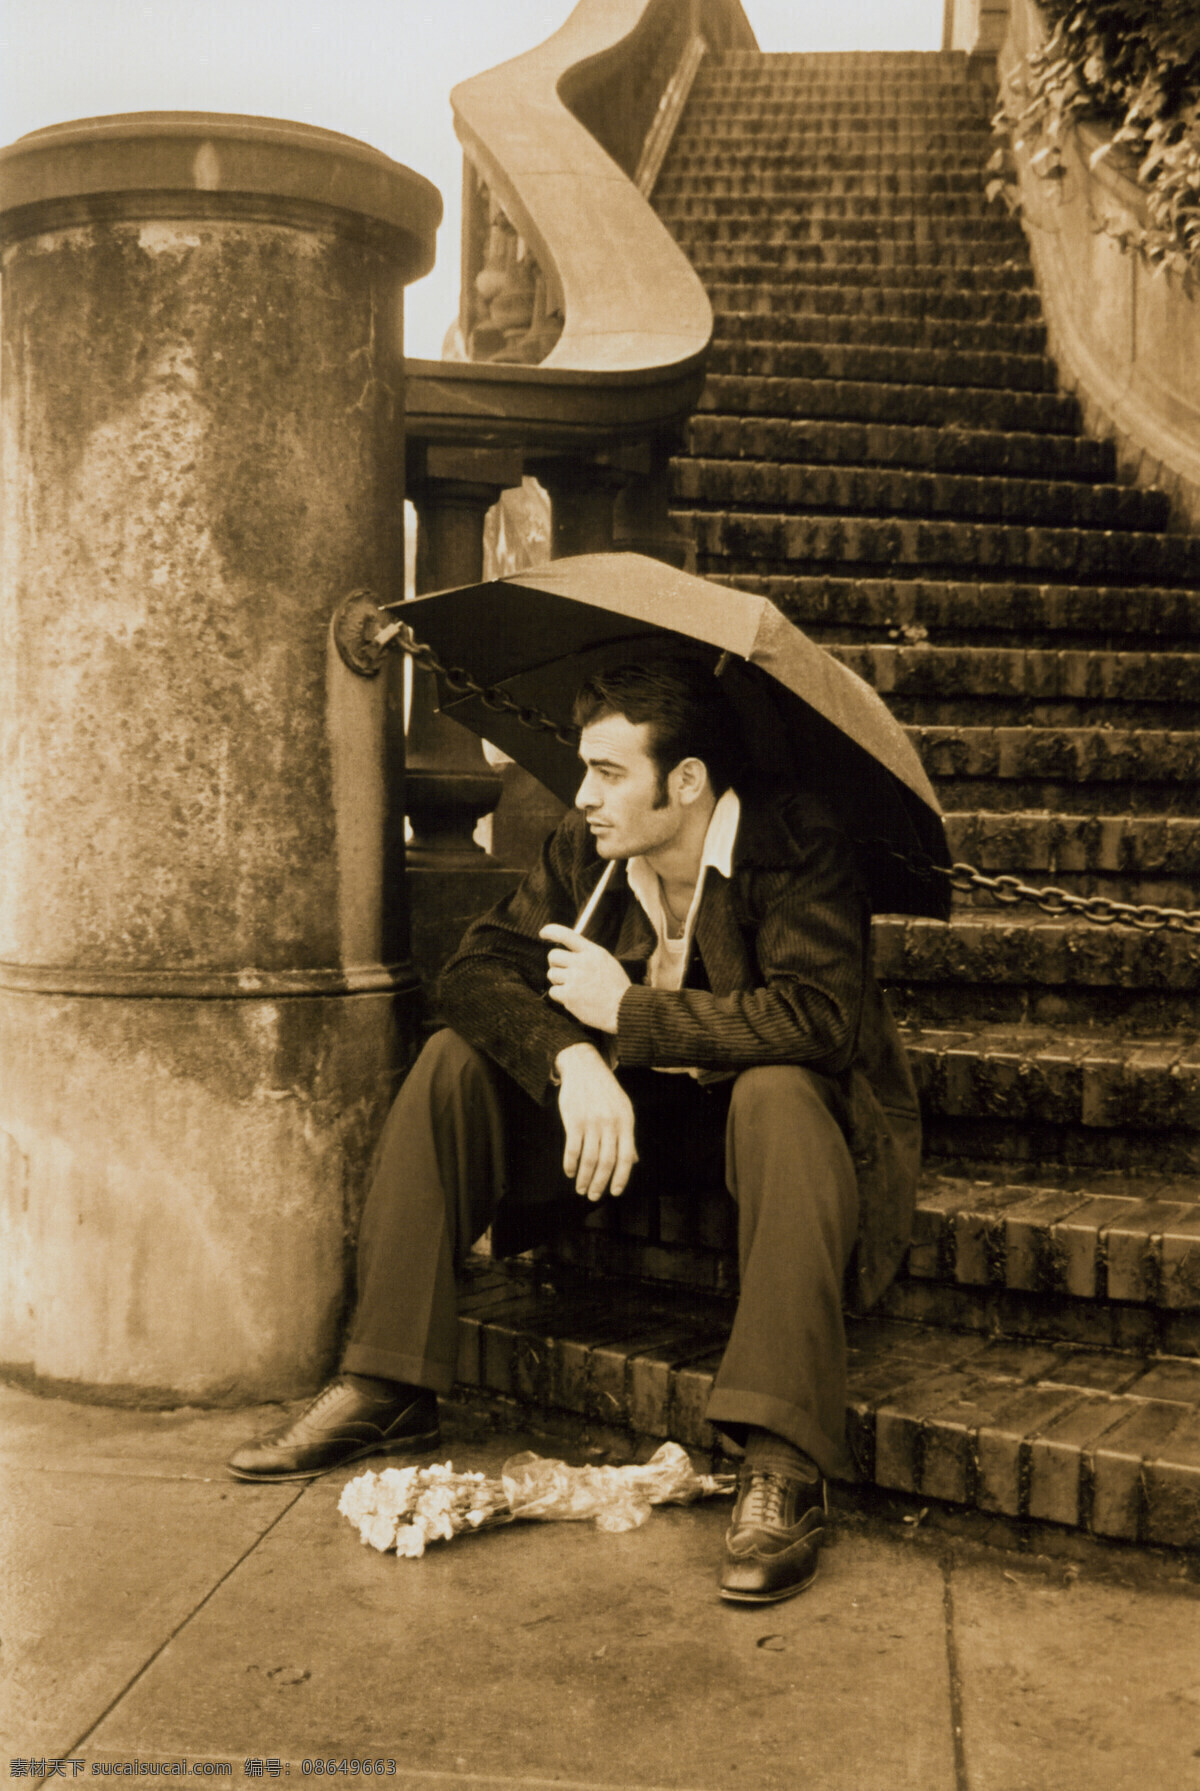 撑雨伞男人 男性 男人 男士 台阶 花 黑白照片 人物图库 人物头像 摄影图